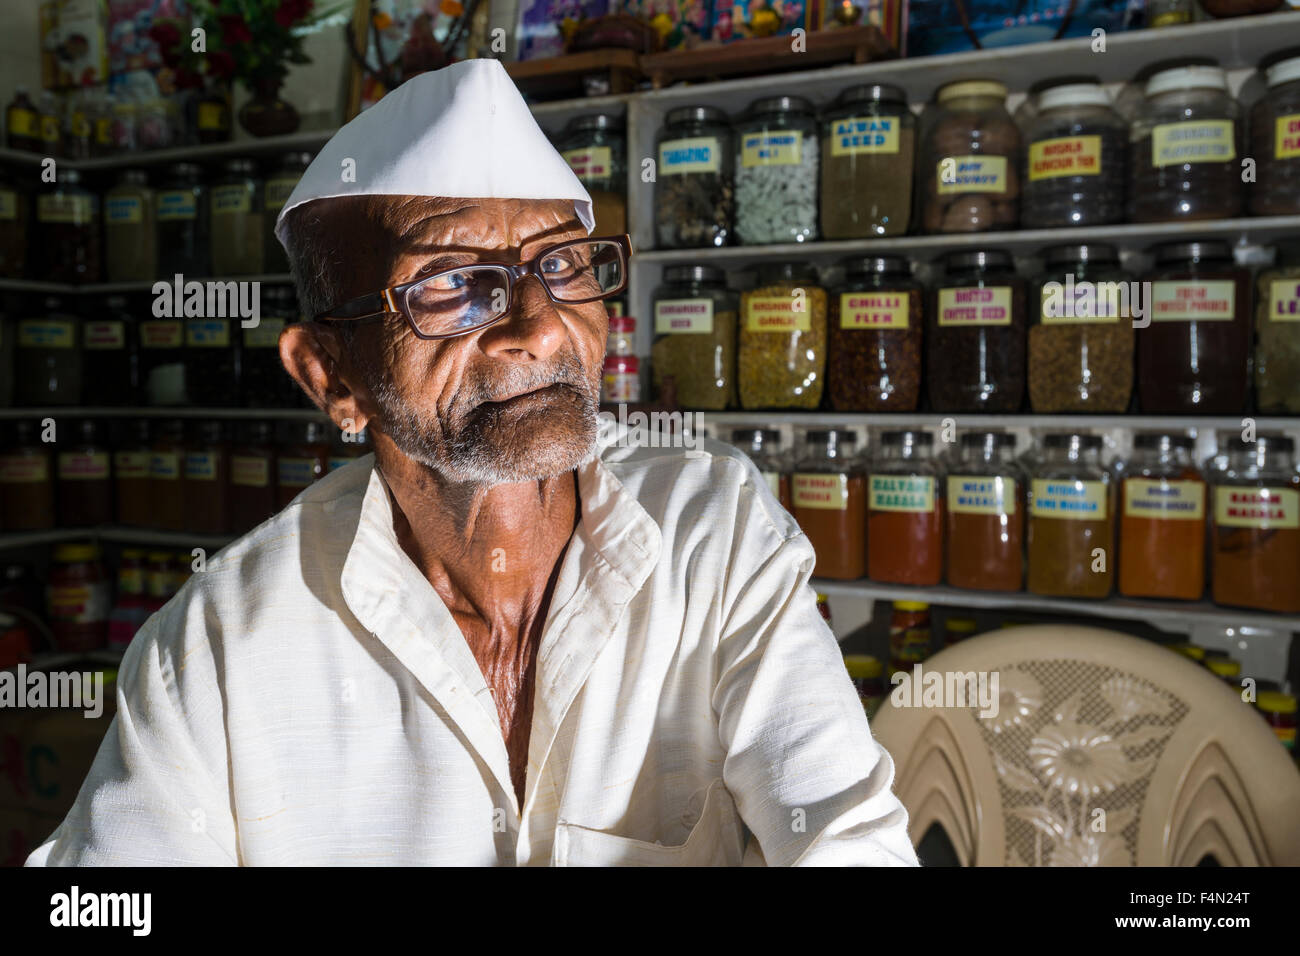 Portrait d'un vendeur à crawfort marché, l'un des plus anciens marchés de la ville de légumes Banque D'Images